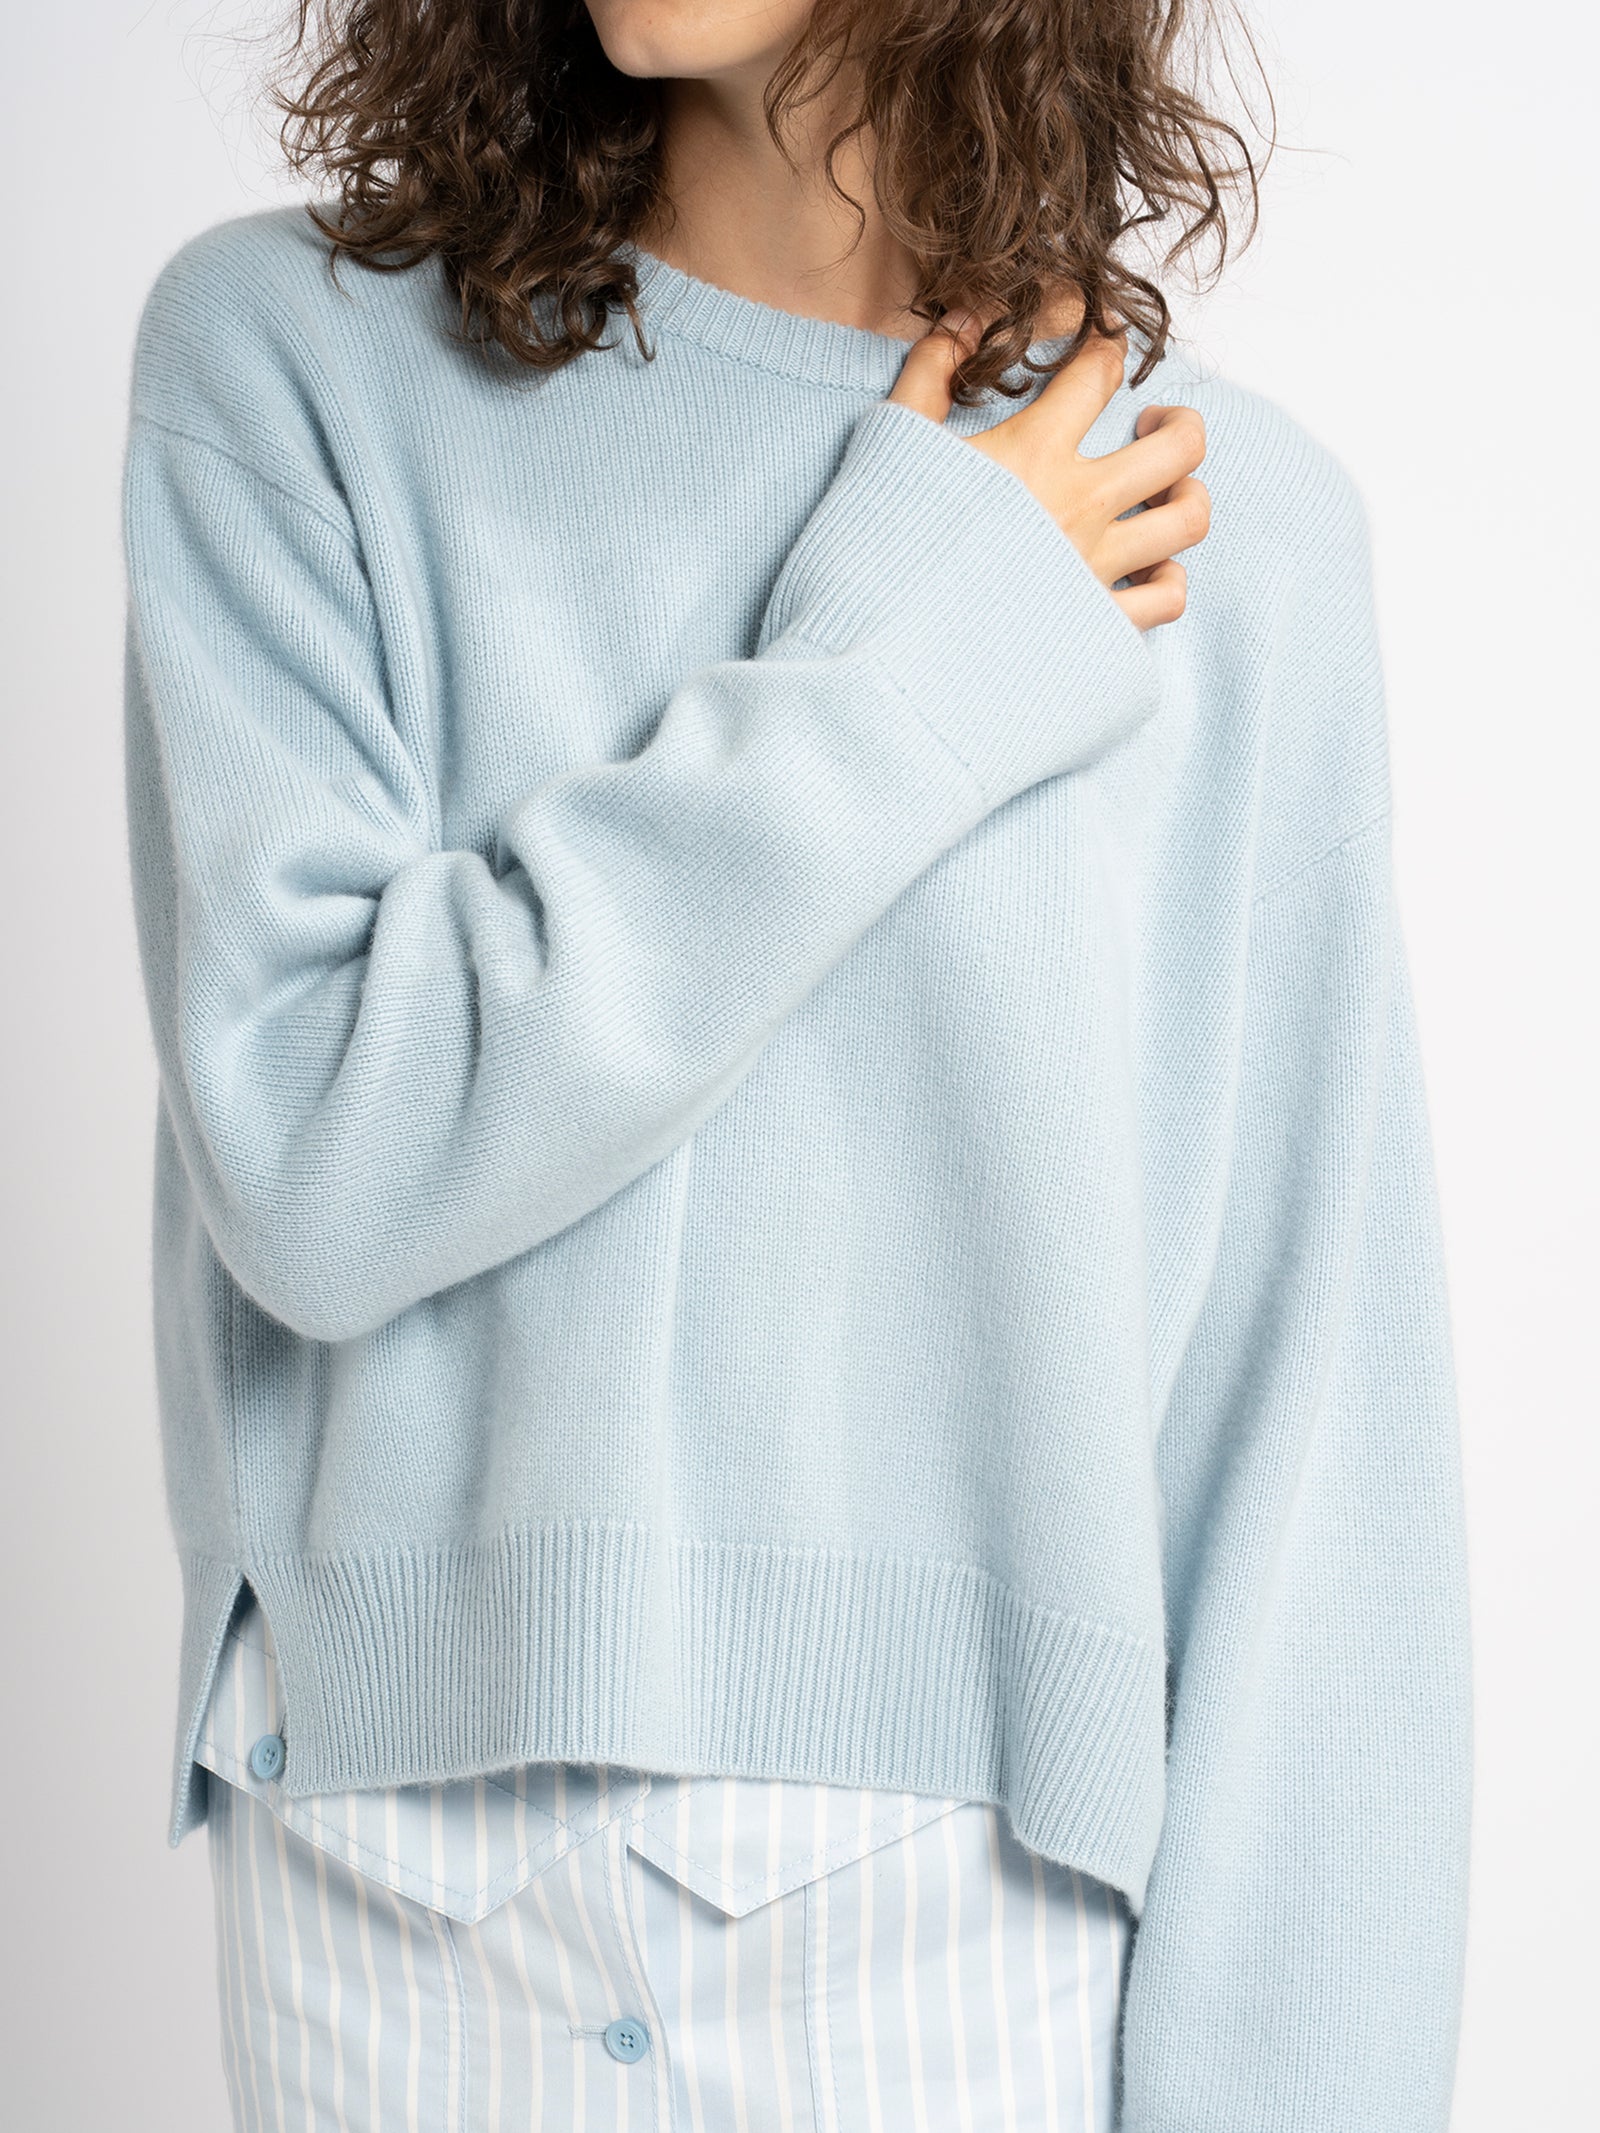 Pardis Cashmere Sweater